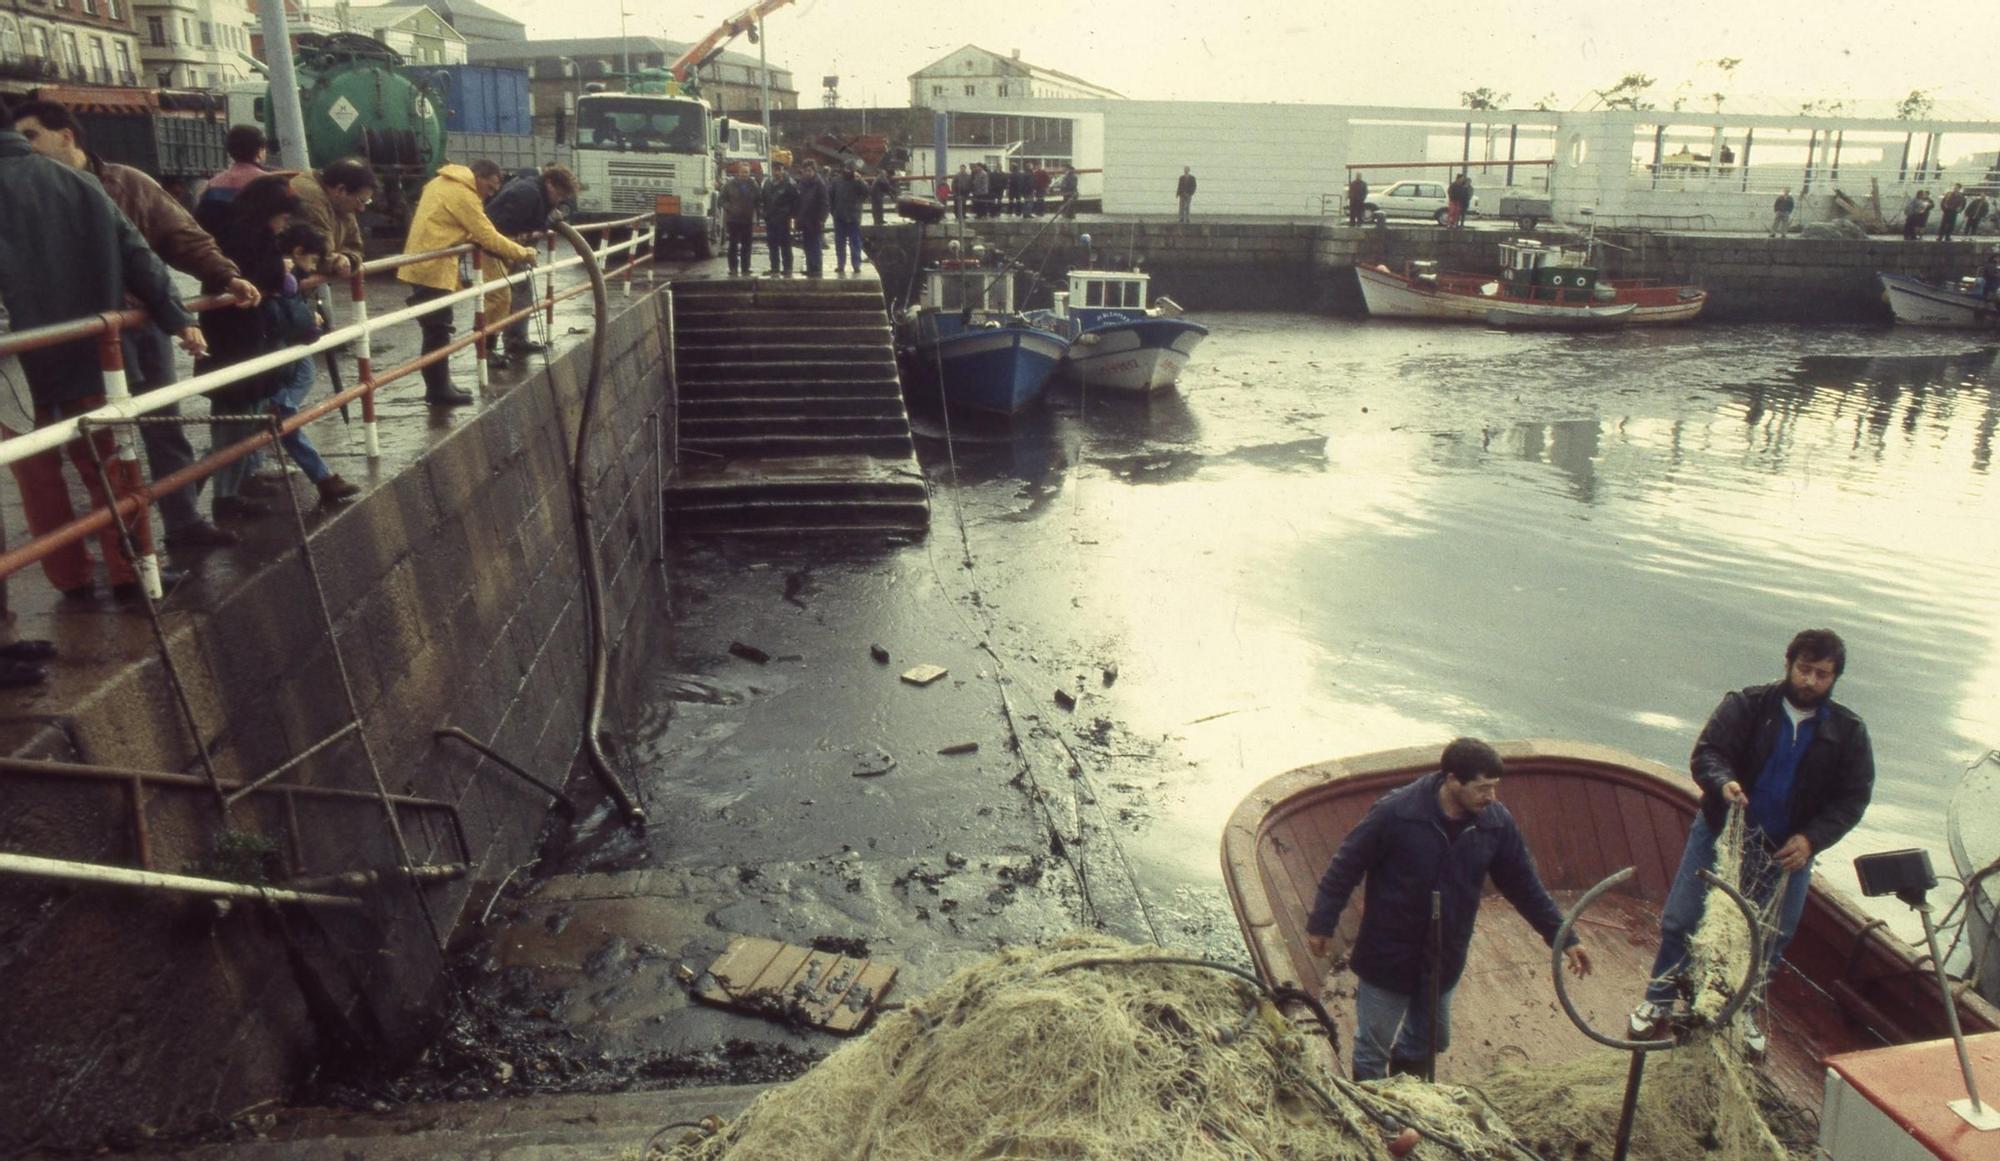 El petrolero Mar Egeo que llevaba 80000 toneladas de petroleo a la refinería de A Coruña embarrancó junto a la torre de Hércules partiéndose en dos y provocando una gran marea negra 1992 Magar (4).jpg